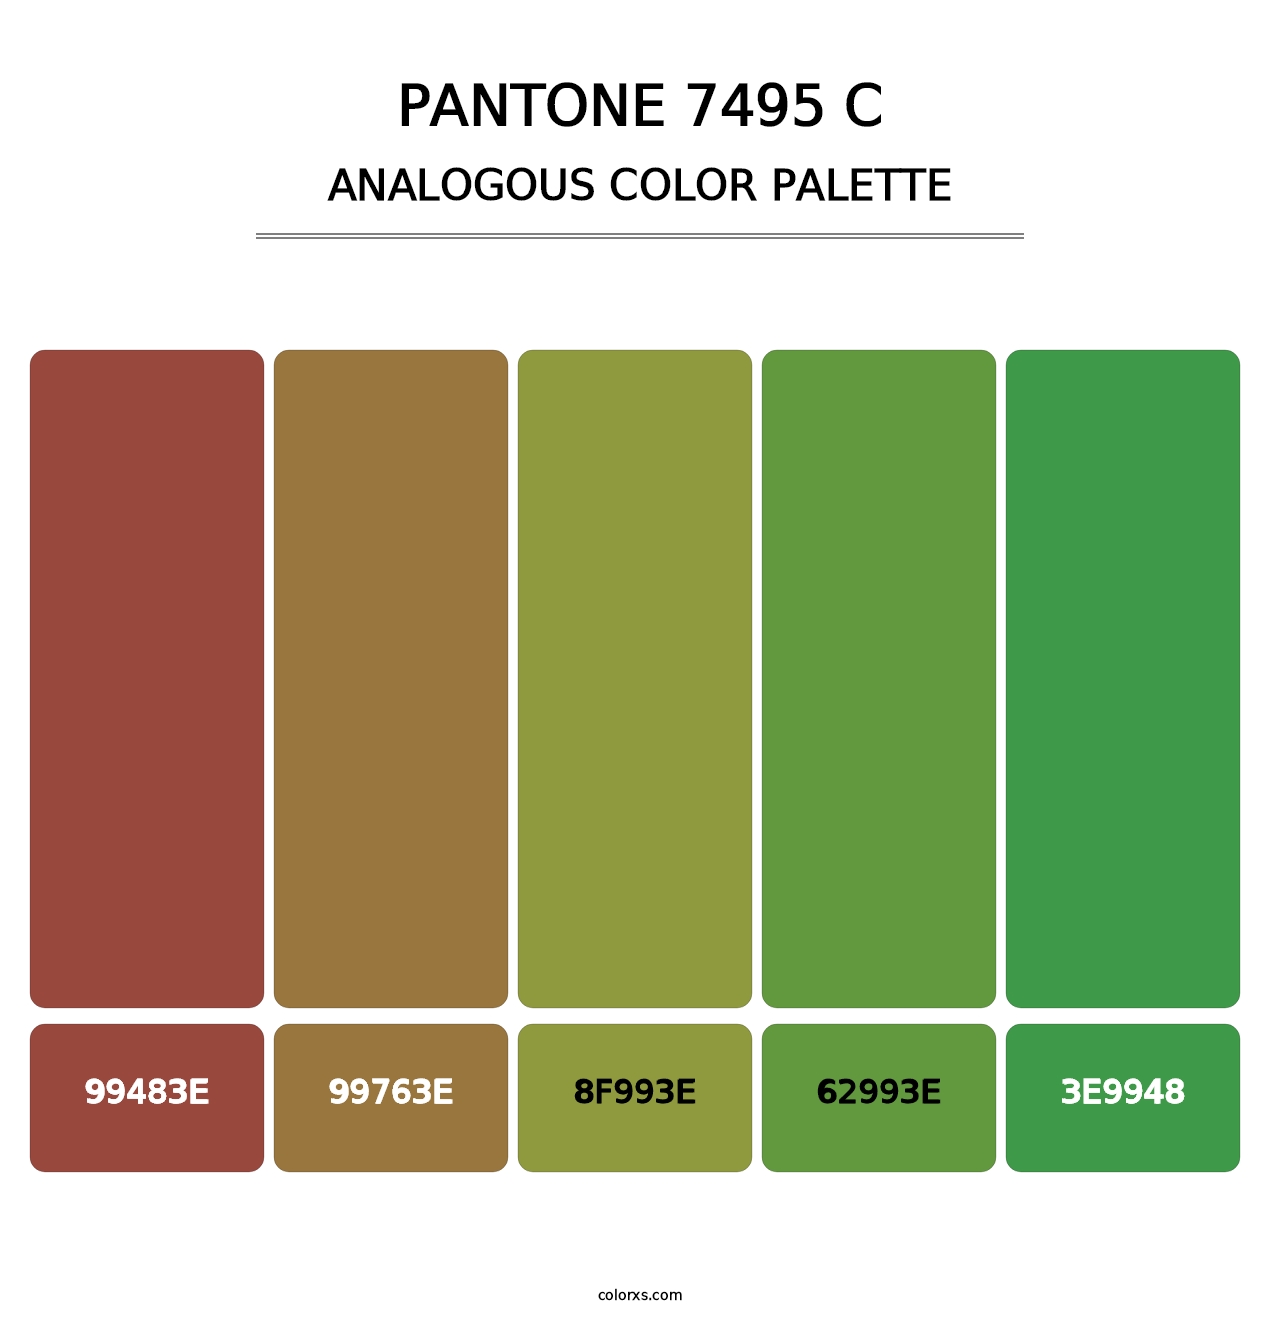 PANTONE 7495 C - Analogous Color Palette